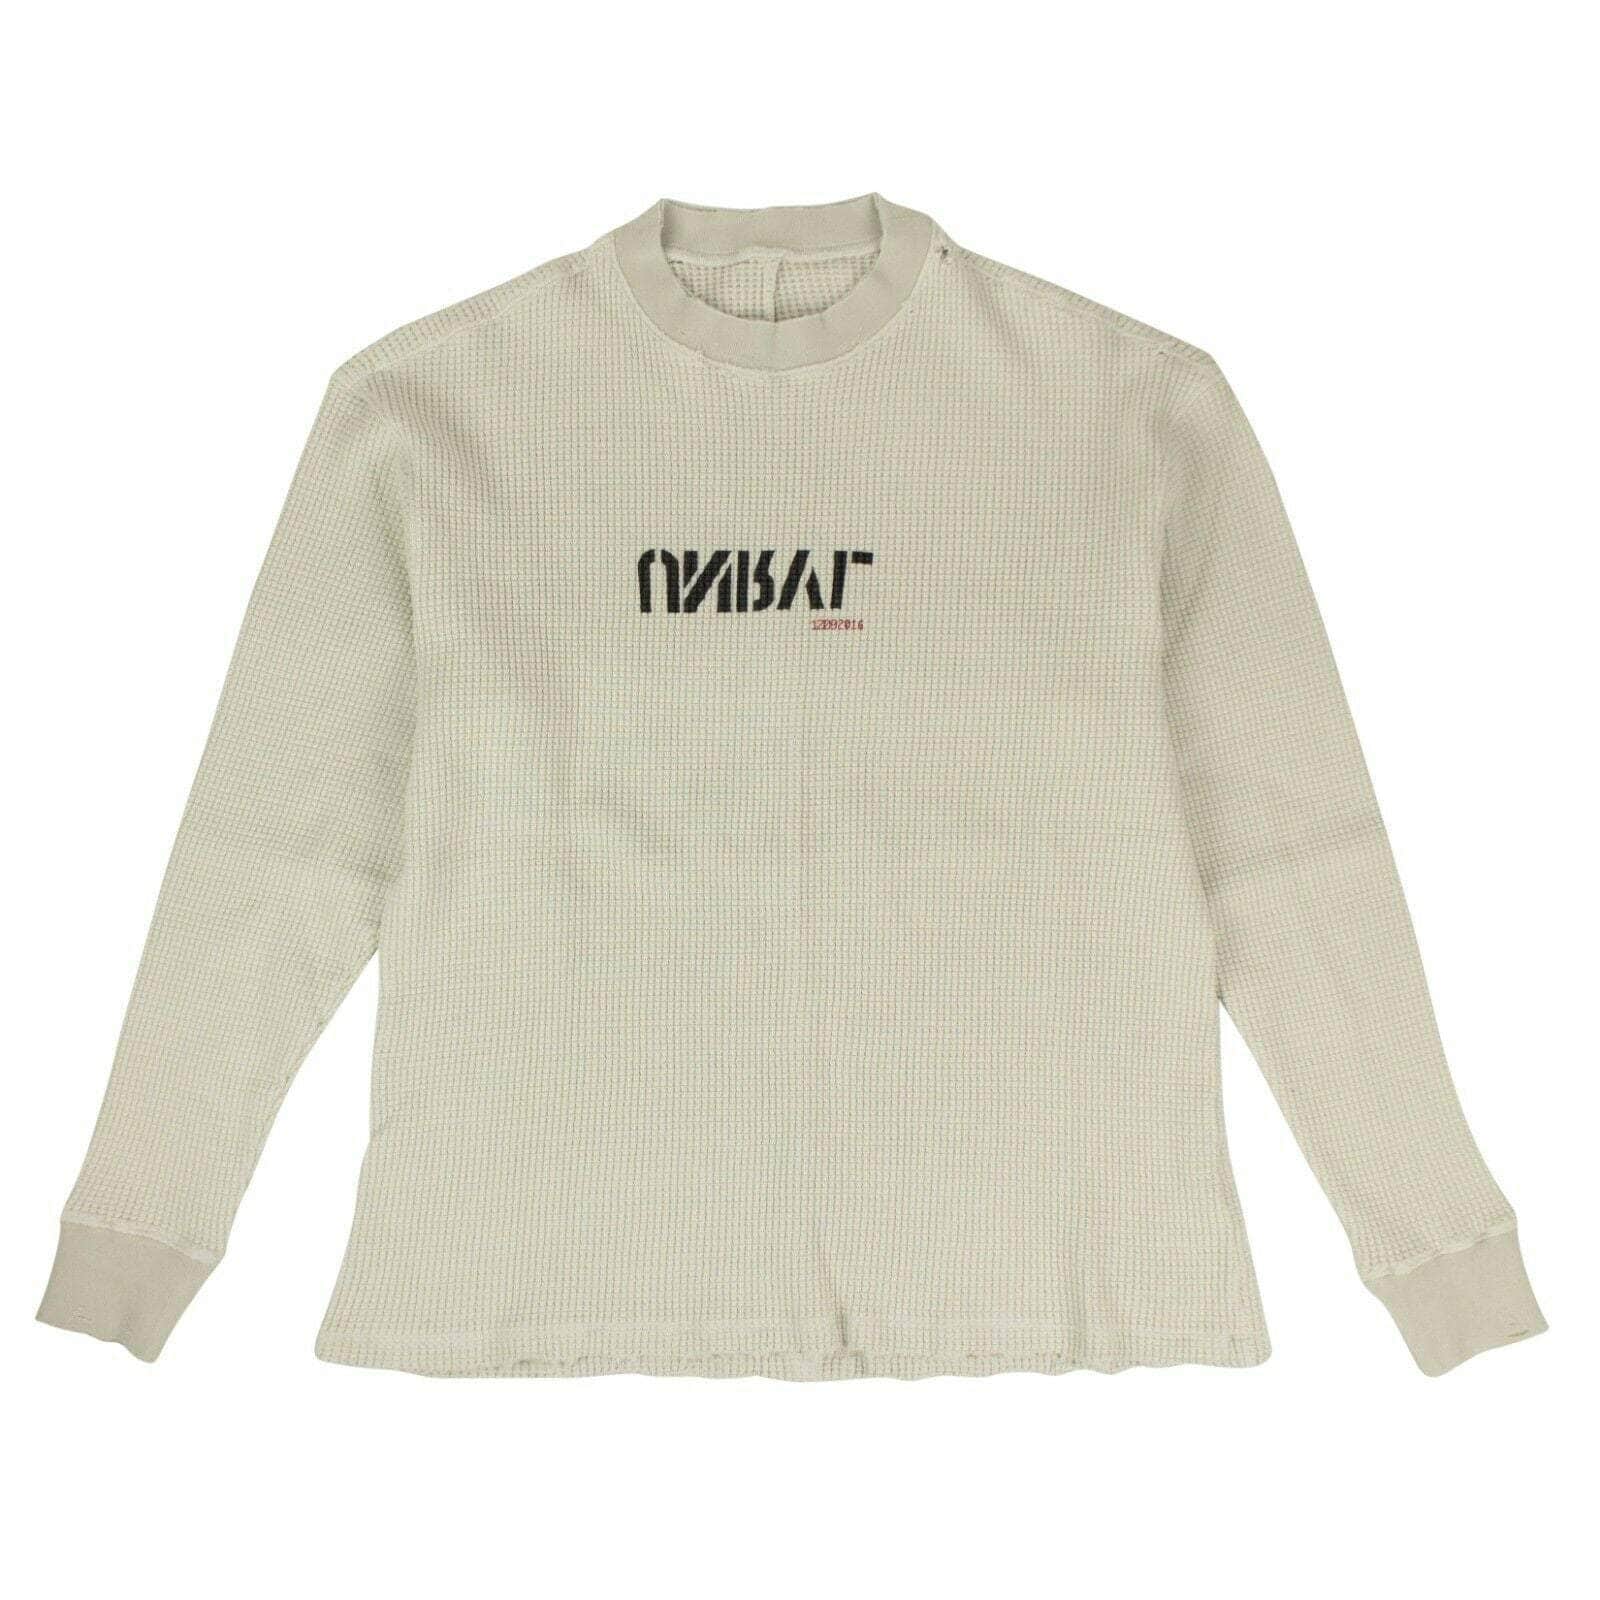 Unravel Project Men's T-shirts S Cotton Waffle Knit Skate T-Shirt - Beige JF6-UN-1004/S JF6-UN-1004/S